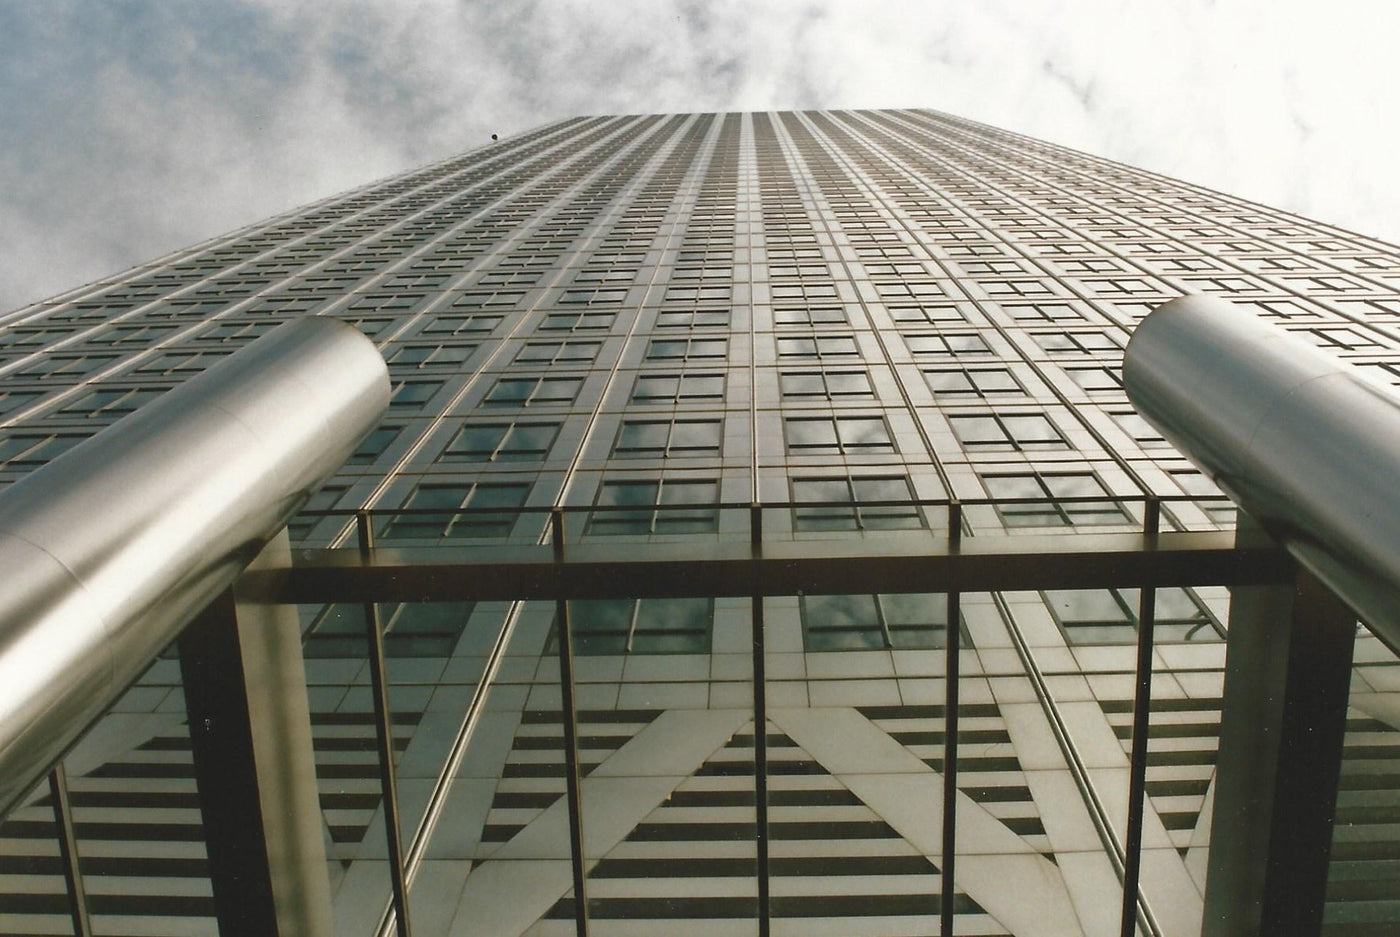 Canary Wharf One Canada Square 'Vertigo' photograph